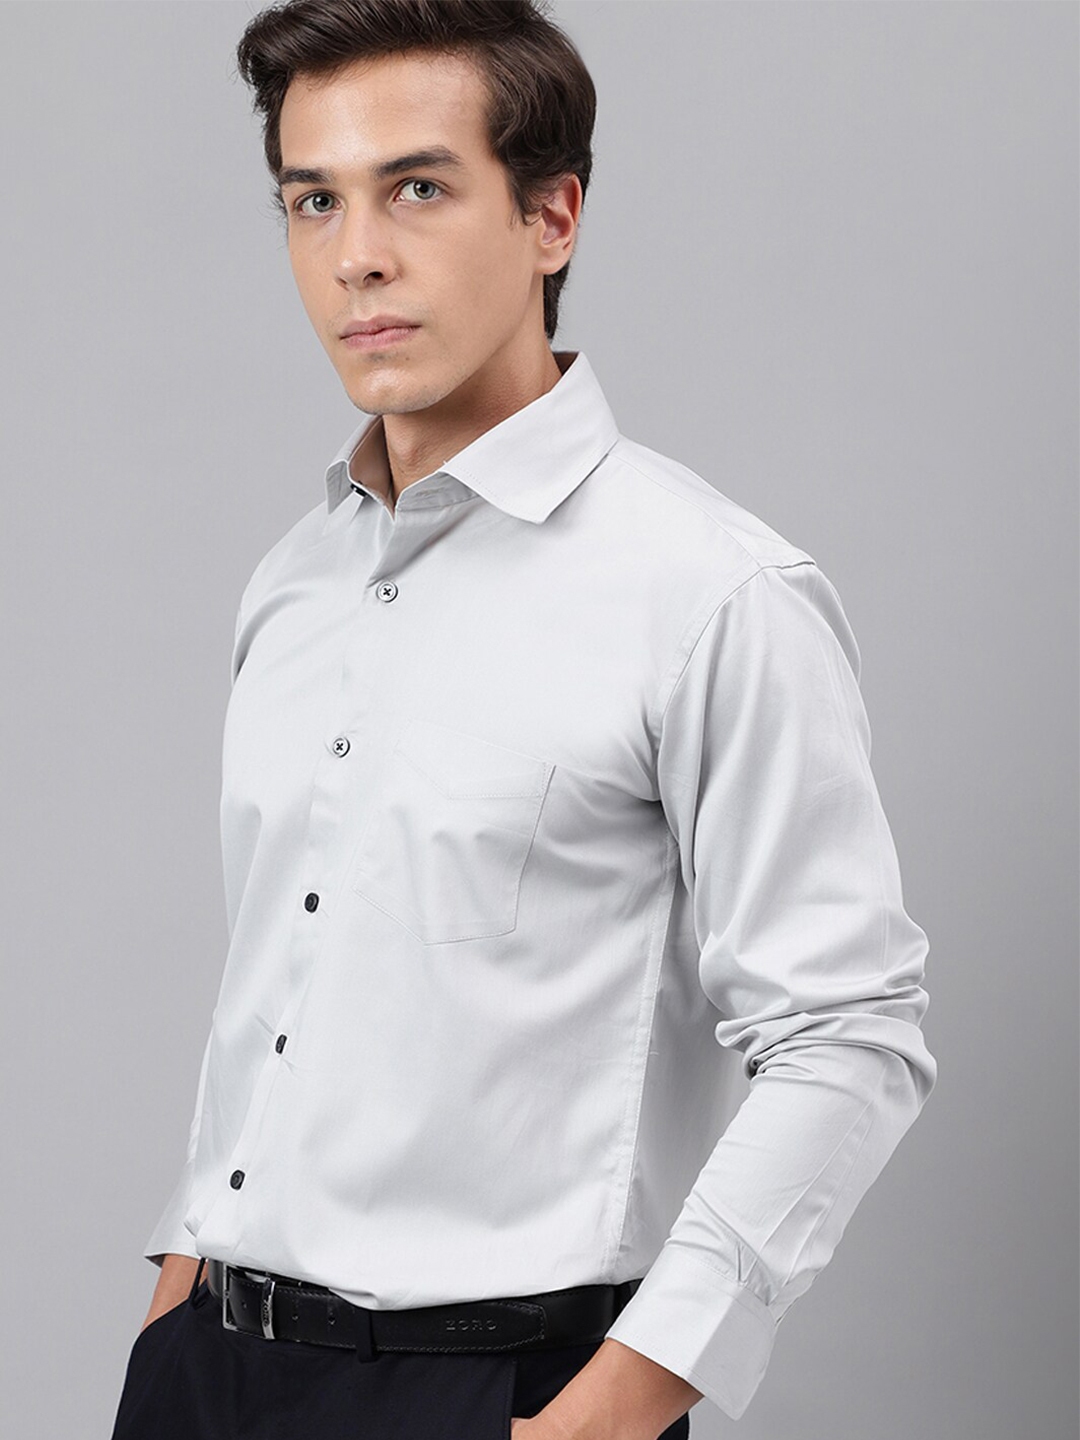 Buy Hancock Premium Cut Away Collar Cotton & Satin Party Shirt - Shirts ...